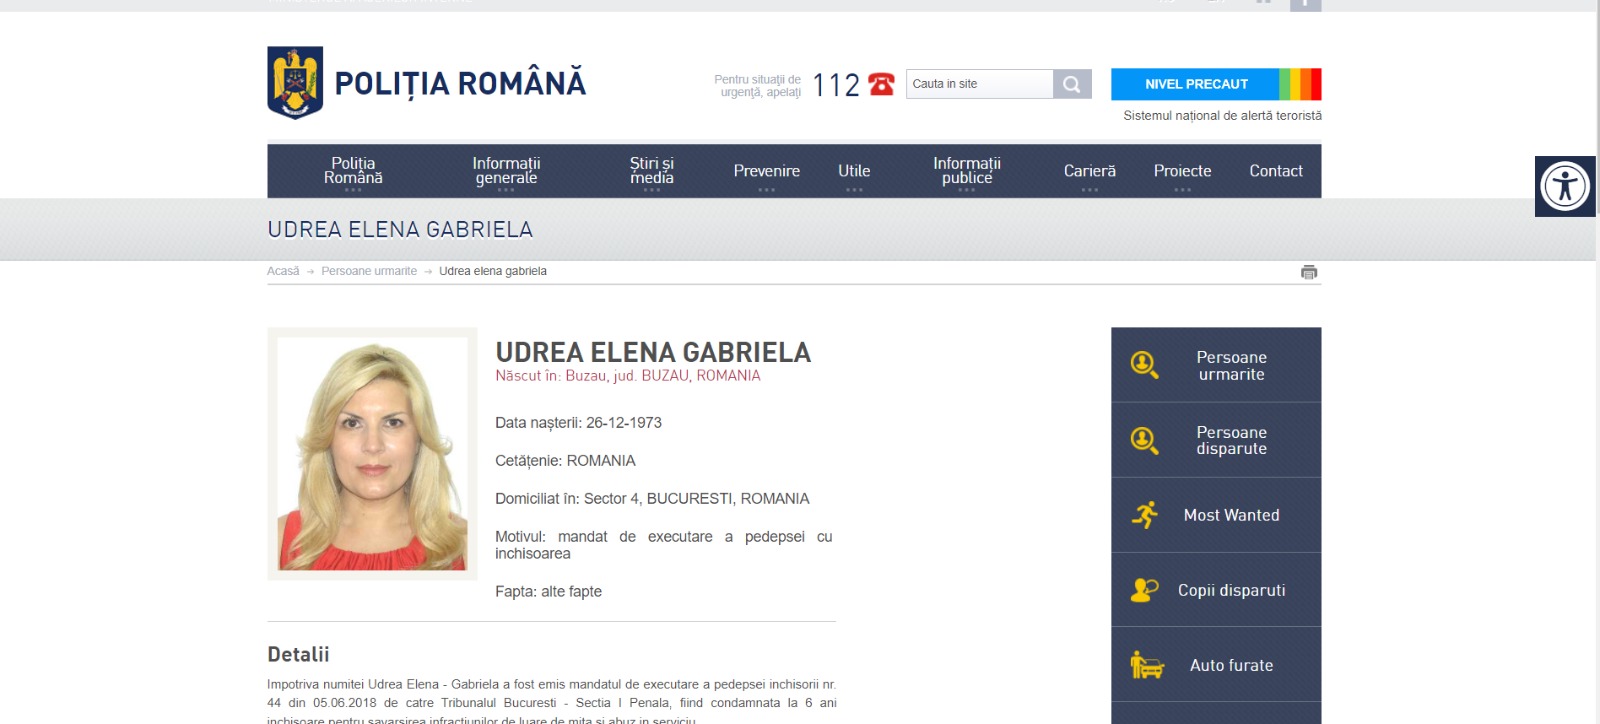 Elena Udrea a fost prinsă în Bulgaria, la câteva ore după ce a fost dată în urmărire generală